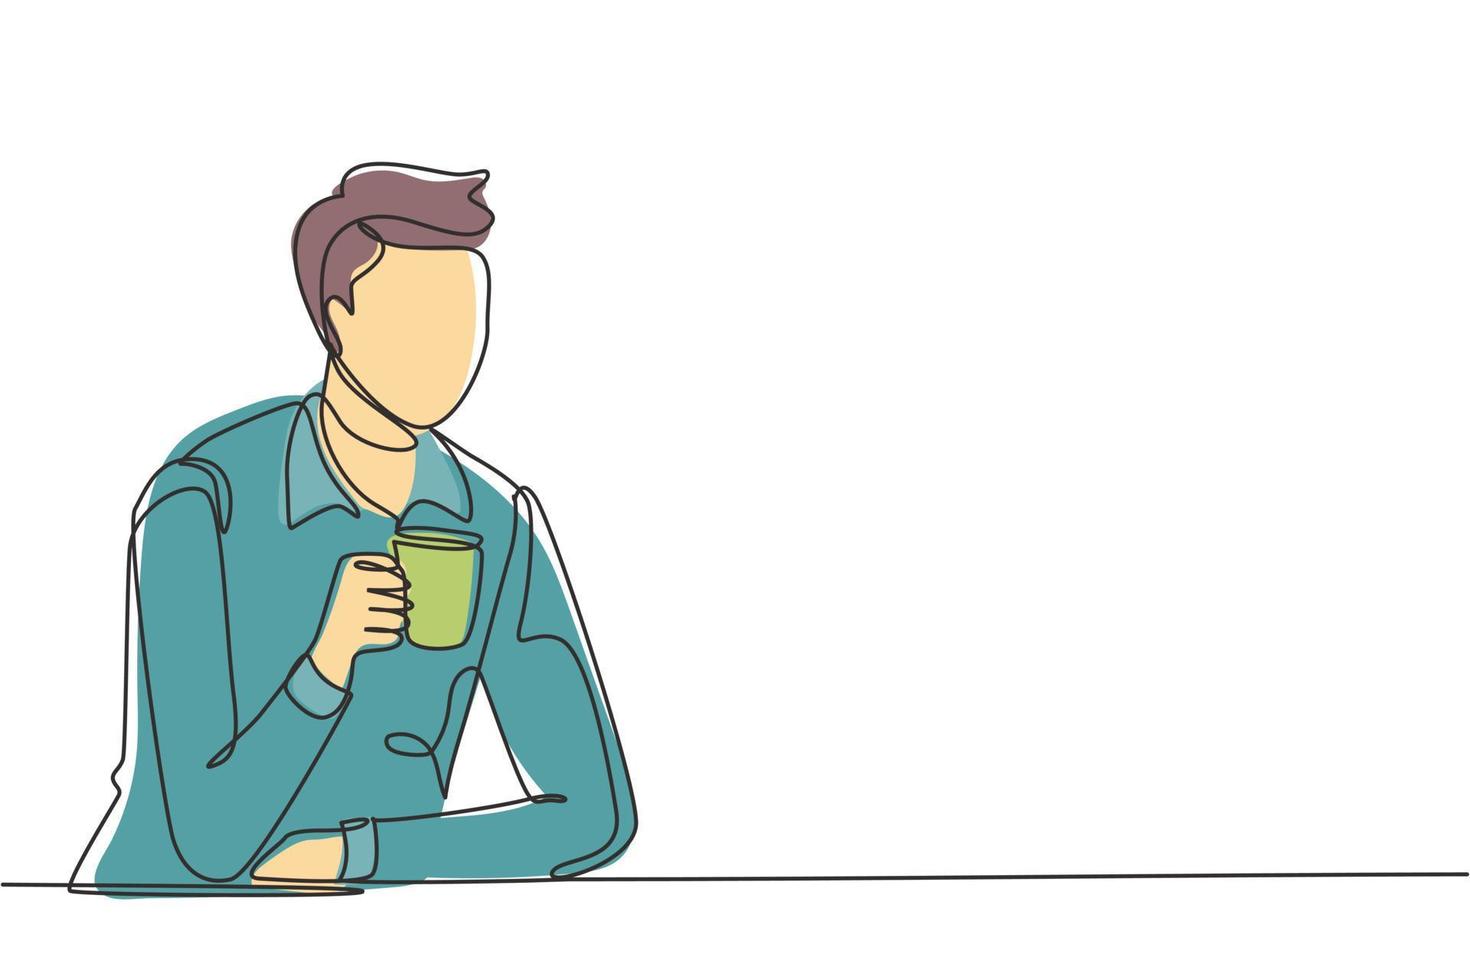 kontinuerlig en rad ritning ung man sitter och håller en kopp kaffe i ena handen. njut av morgonen innan jobbet på kontoret. framgång person koncept. enda rad rita design vektorgrafisk illustration vektor